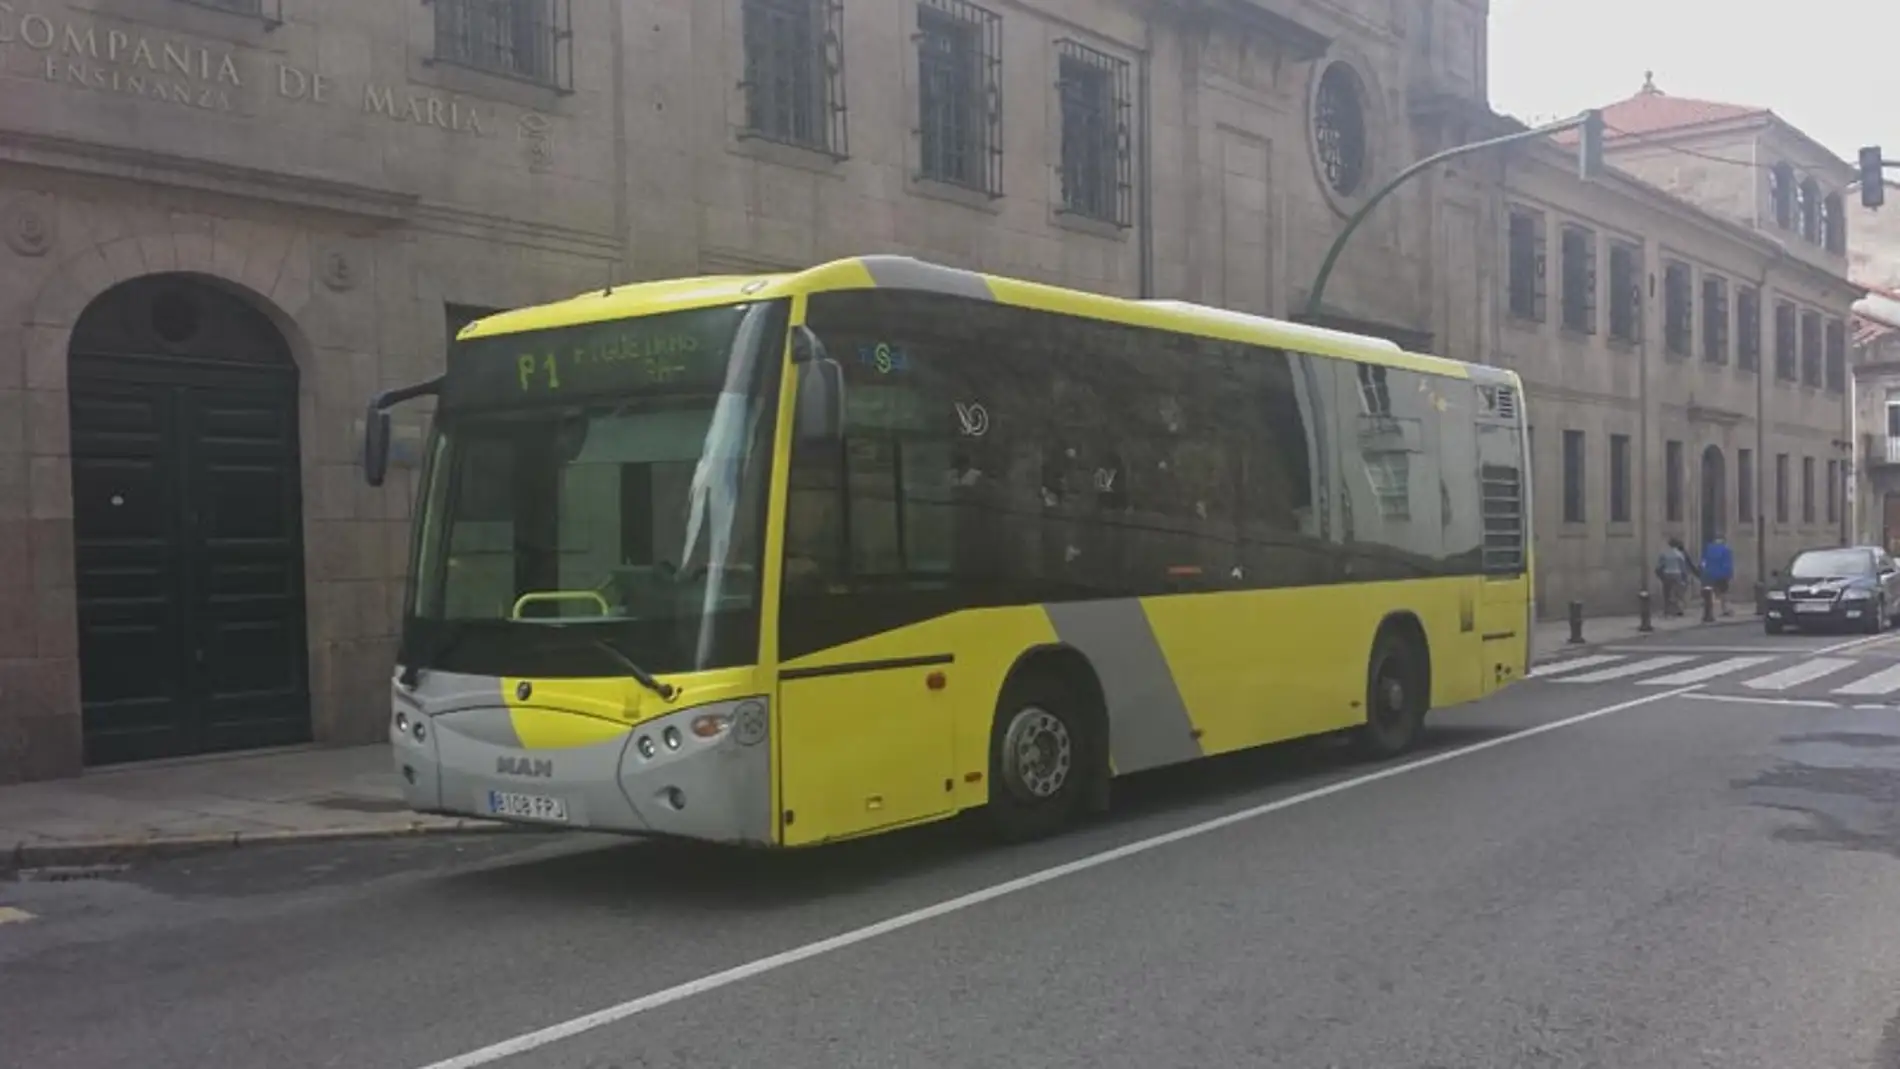 Mónica Suárez, usuaria del transporte urbano de Santiago: "Necesitamos un transporte urbano como Dios manda, que no lo hay, si el bus sale a sus horas la gente no cogería el coche